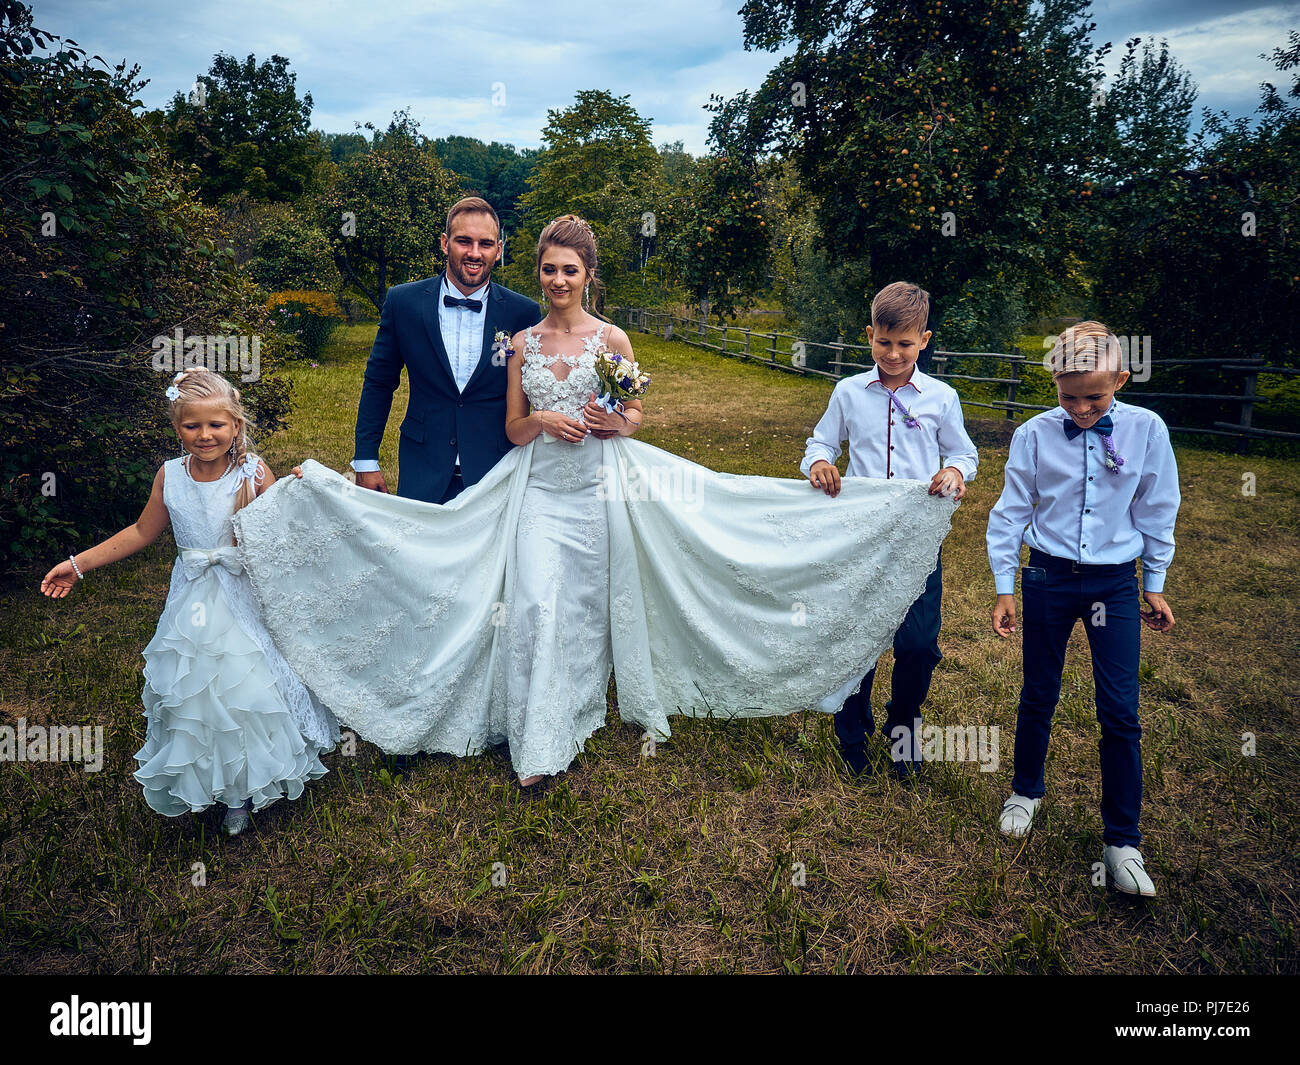 Solenne cerimonia di matrimonio di coppie di sposi novelli. Costumi e tradizioni ereditate da un passato di vita nella vecchia Unione Sovietica. Le persone hanno il divertimento, bere. Foto Stock